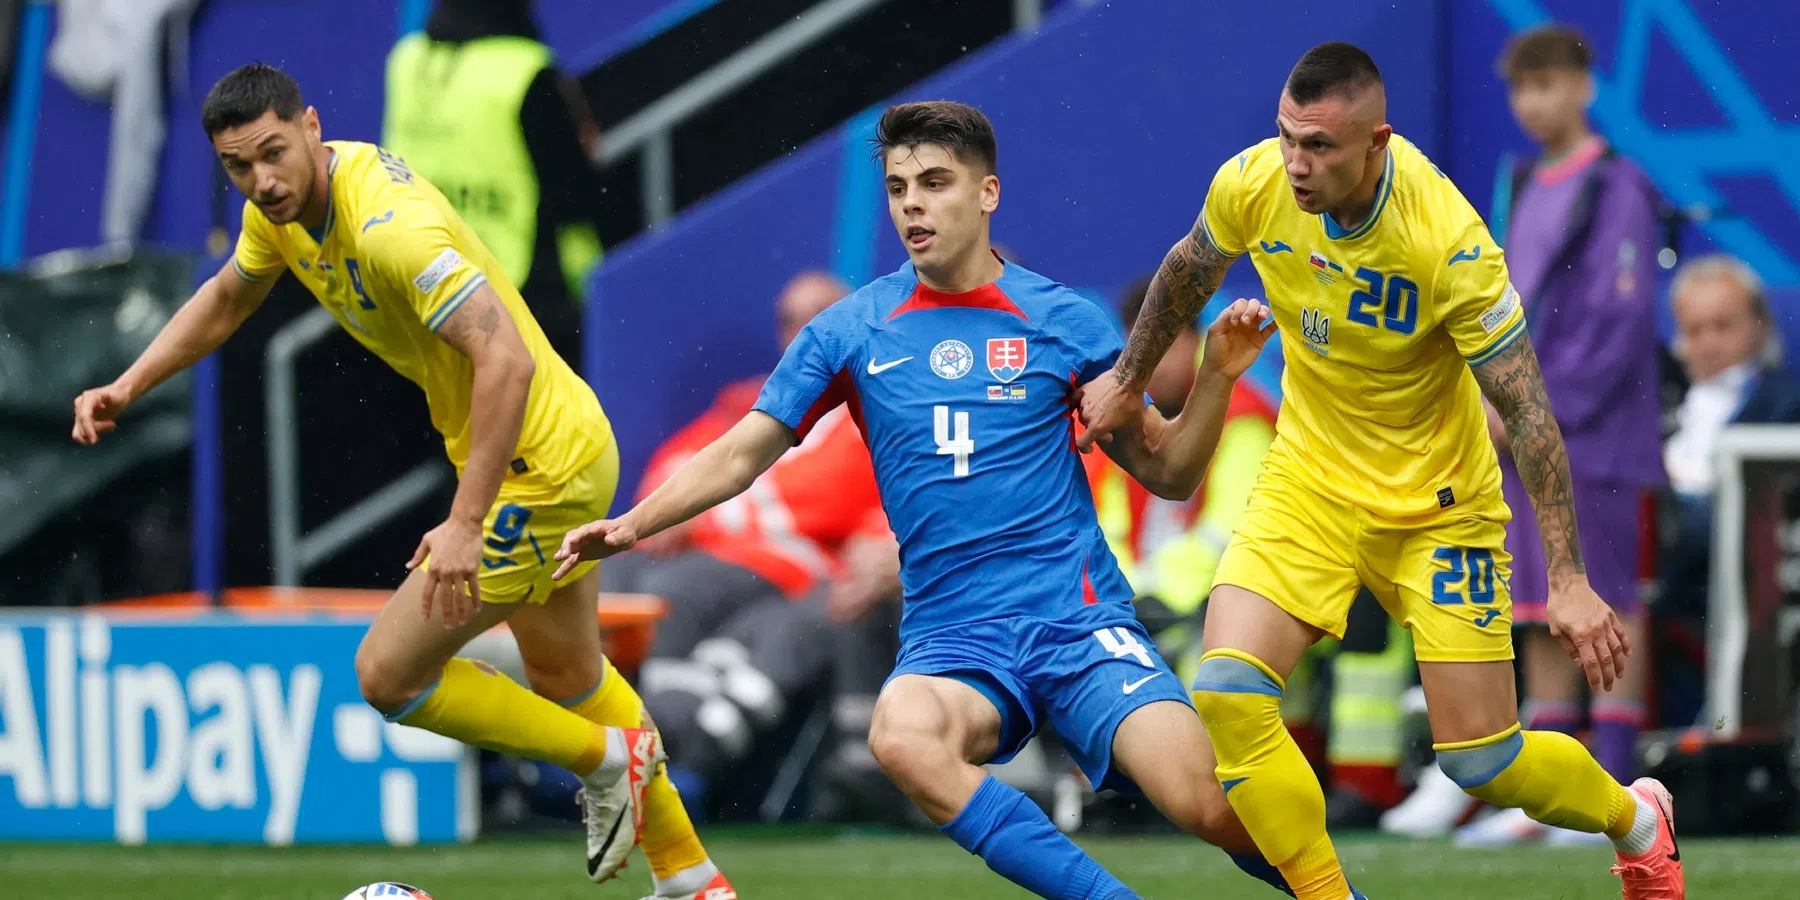 Oekraïne heeft met 1-2 van Slowakije gewonnen en mag nog dromen van volgende ronde